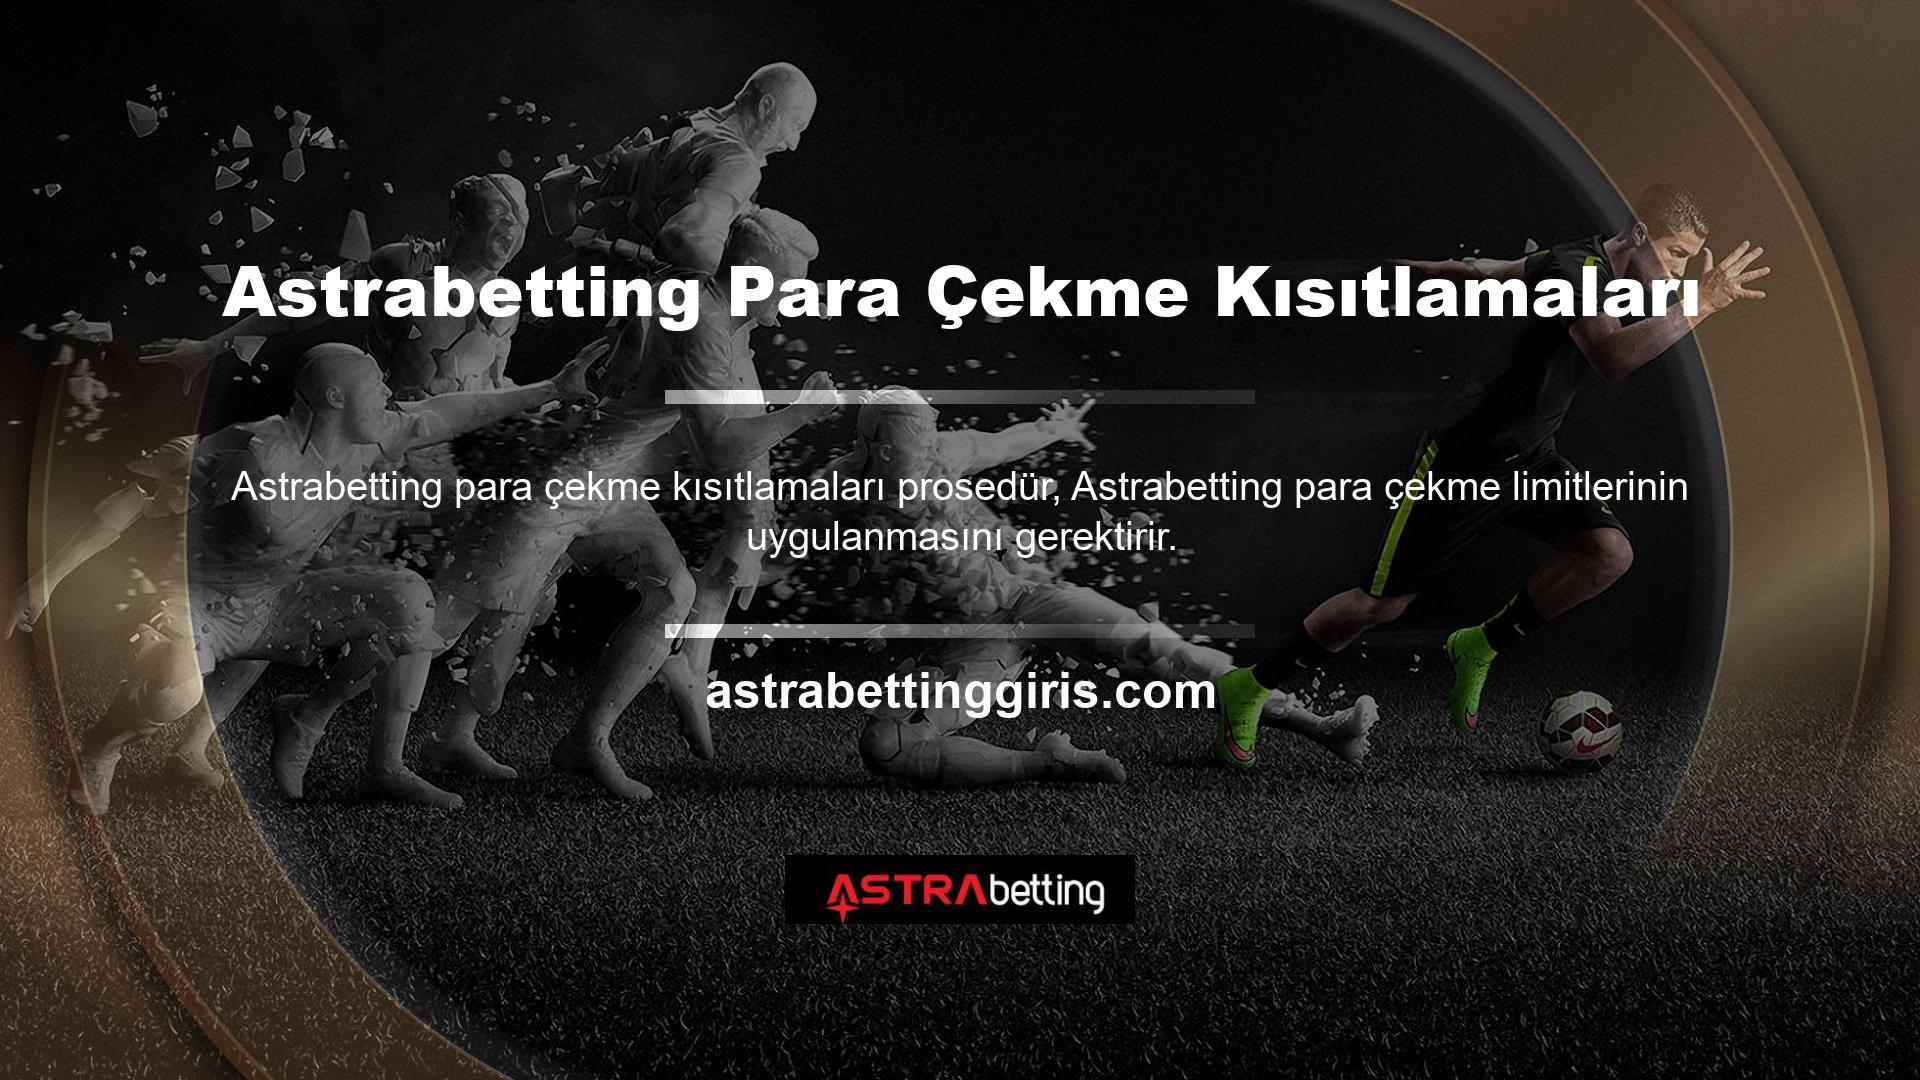 Astrabetting web sitesindeki ödeme yöntemleri, ayrı işlemler olarak kategorize edilmelidir